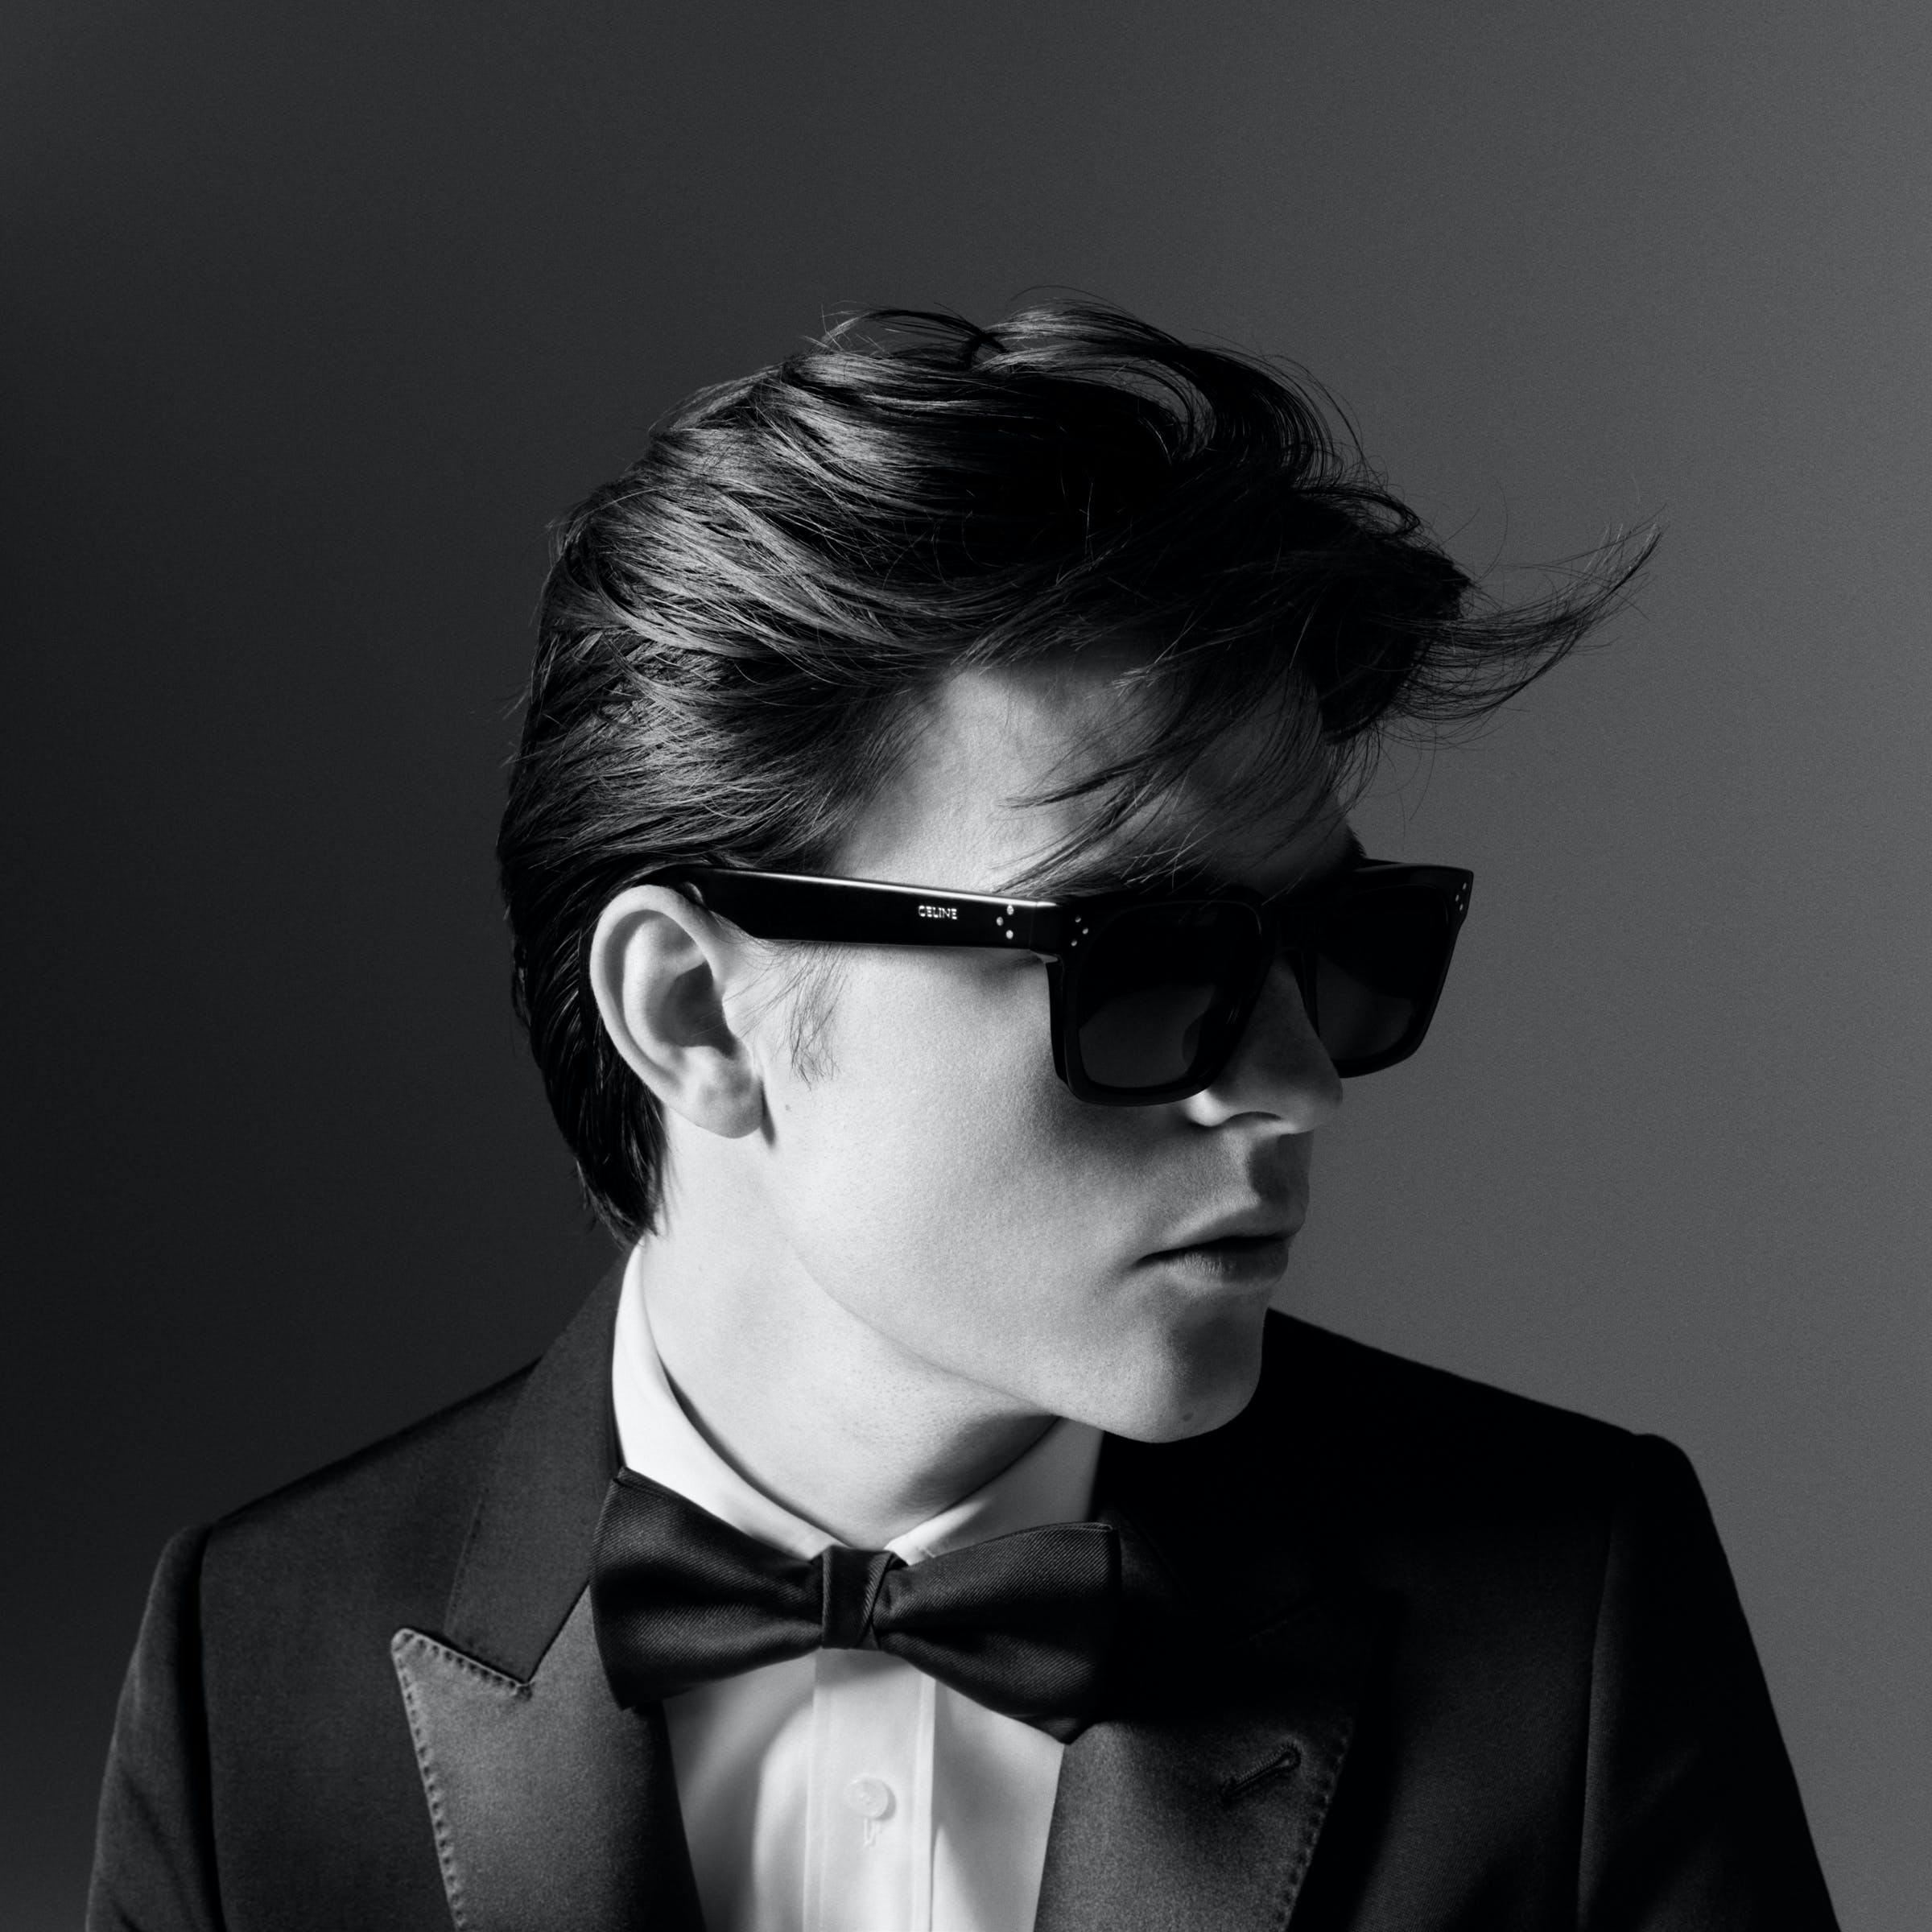 accessories sunglasses formal wear person photography portrait tie suit adult man